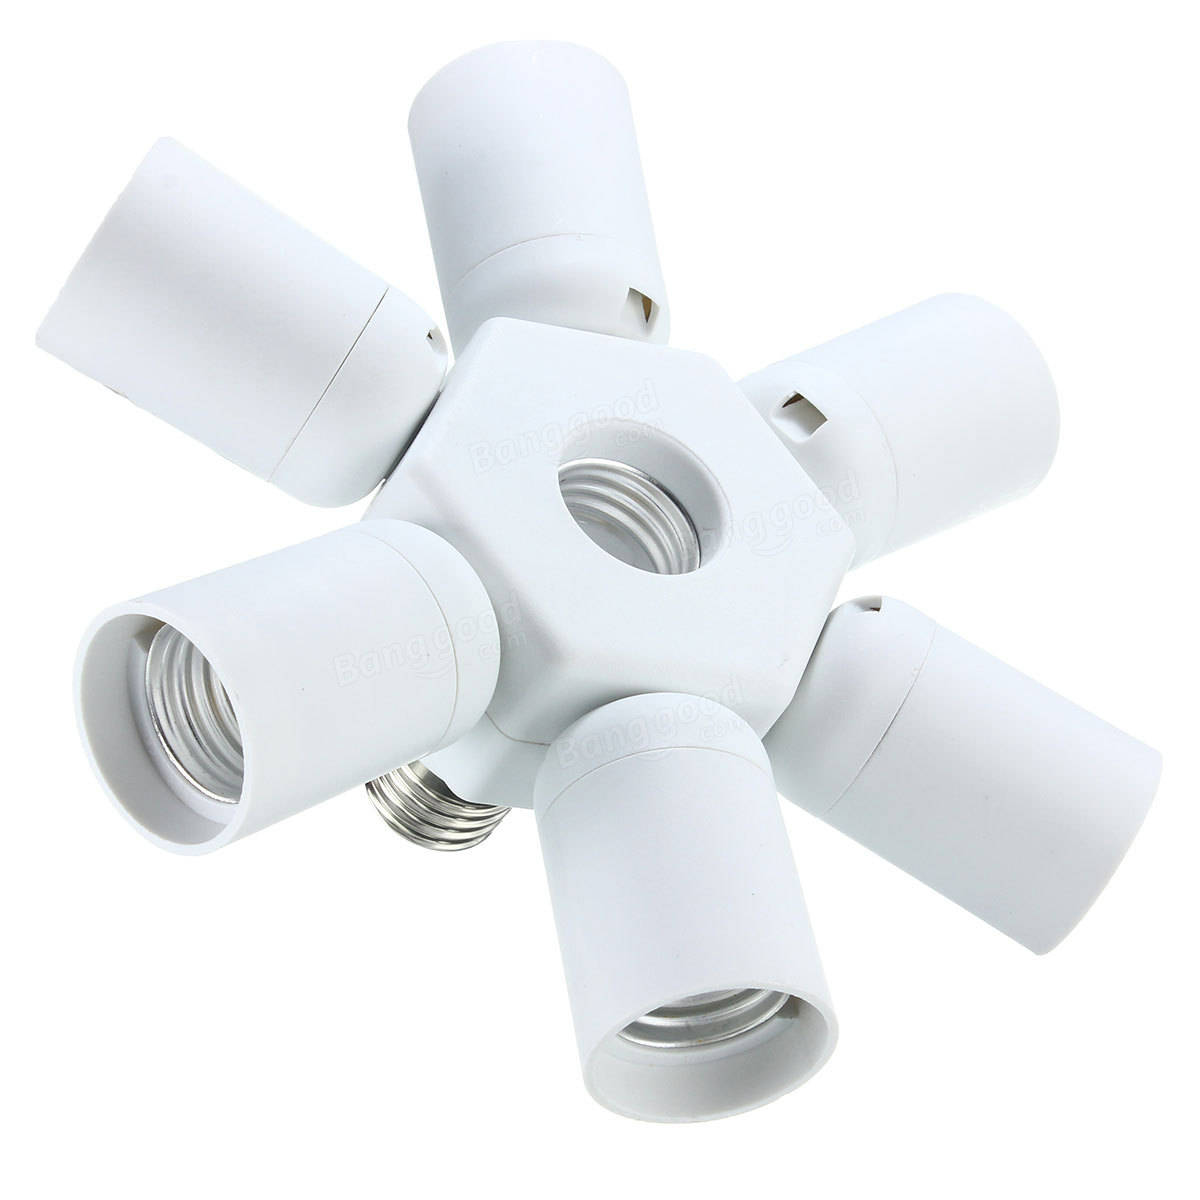 7 in 1 E27 to E27 Base LED Light Lamp Bulb Adapter Holder Socket Splitter